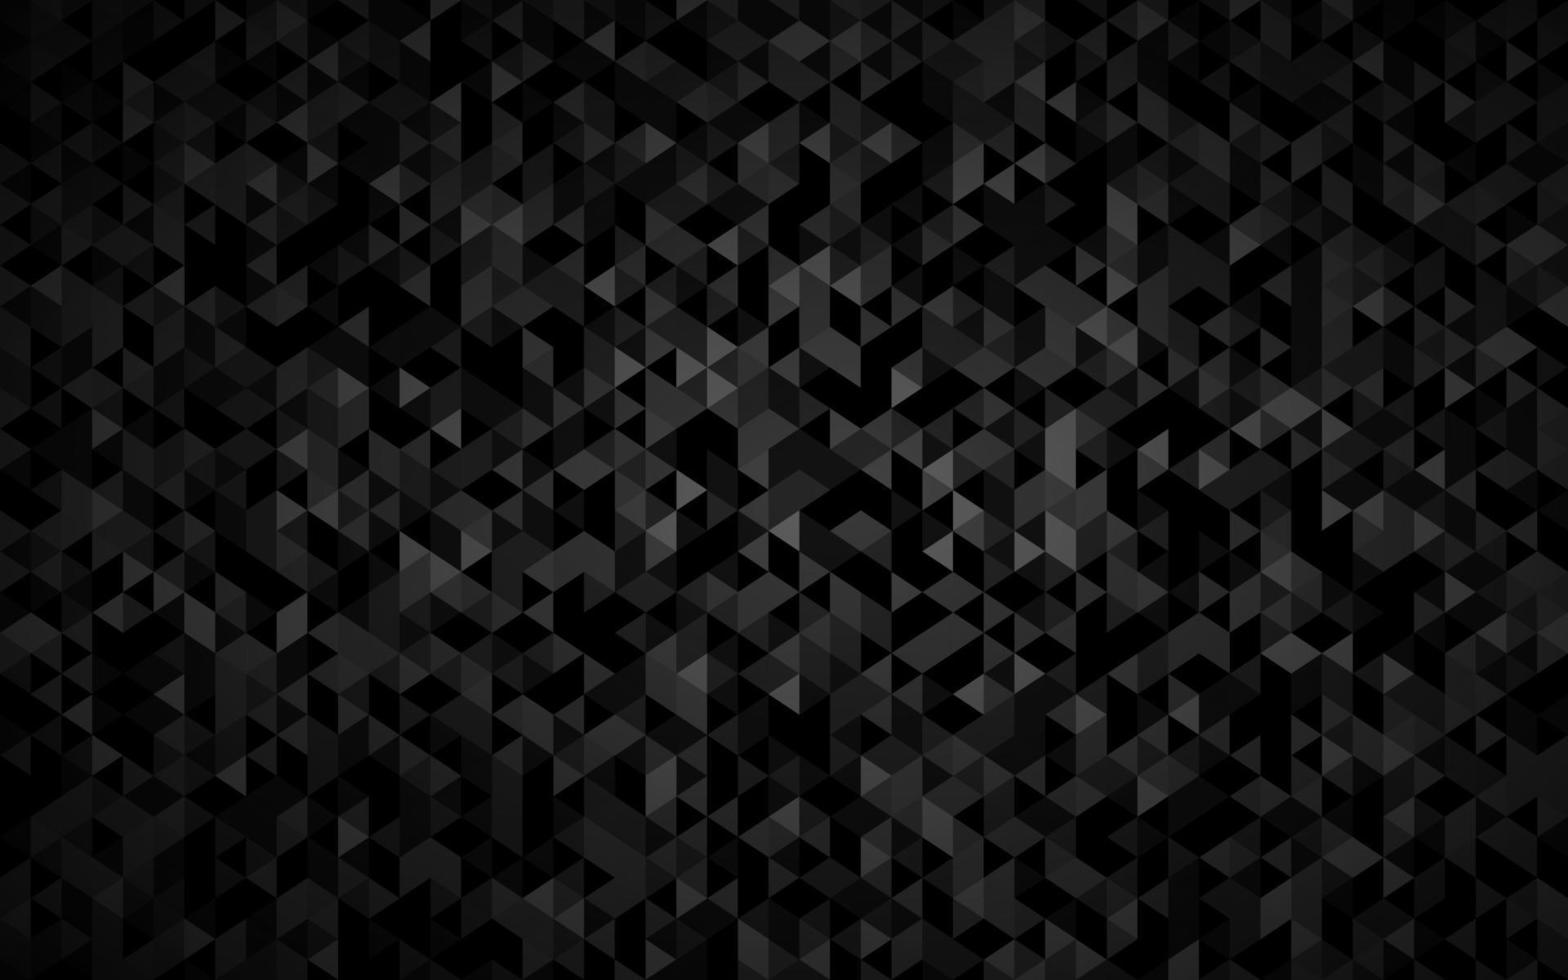 abstrakter Dreieckhintergrund mit schwarzen Dreiecken mit verschiedenen Schattierungen von grauem und weißem Umrissmosaikblick moderne Vektortexturillustration vektor